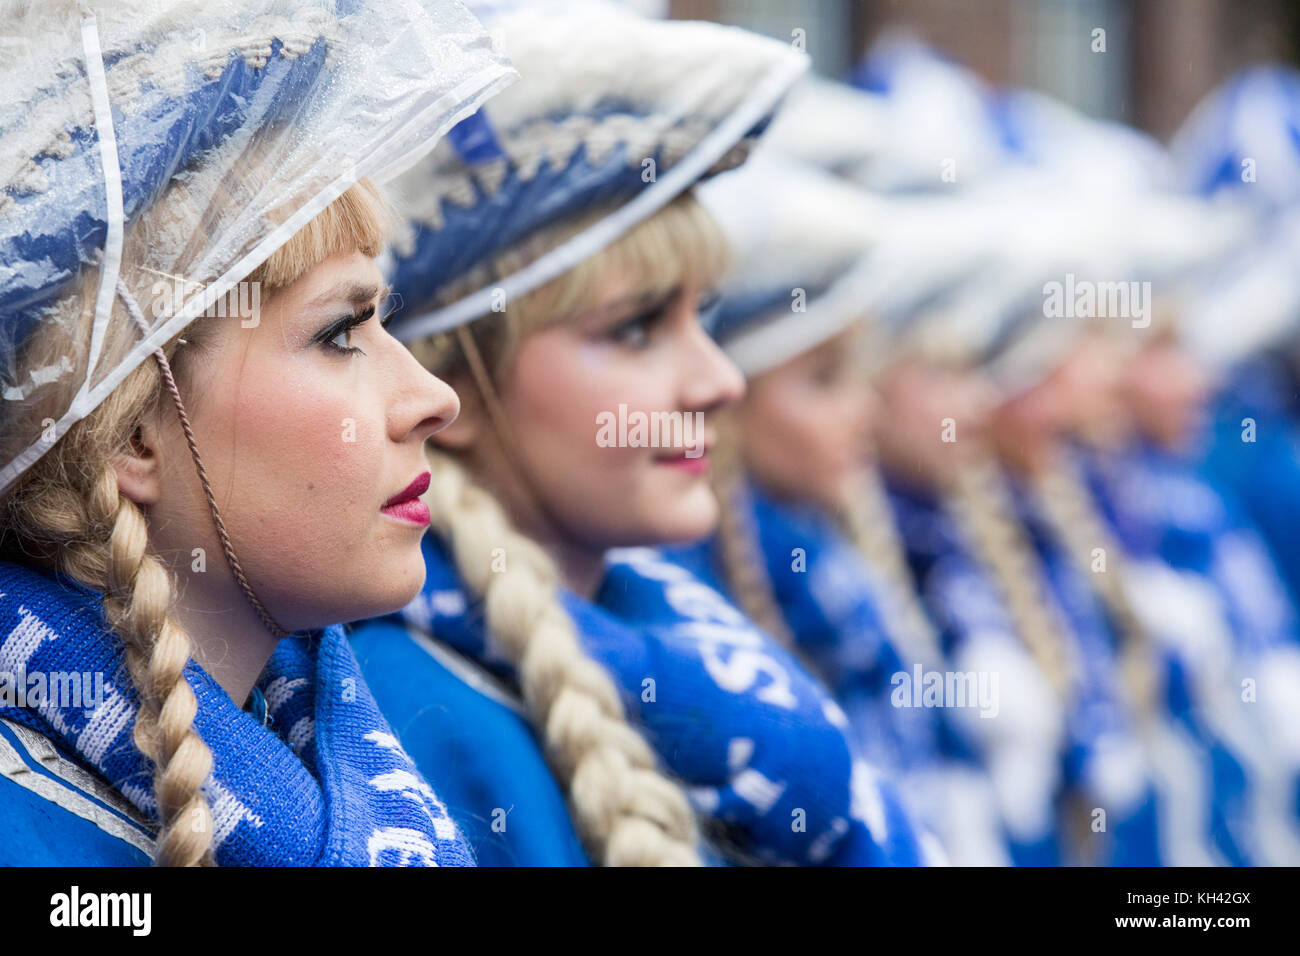 La saison du carnaval allemand commence traditionnellement par l'événement Hoppeditz Erwachen le 11 novembre à Düsseldorf, en Allemagne, et se déroule à Ash mercredi l'année suivante. Tanzmariechen traditionnel, danseuses de majorette. Banque D'Images